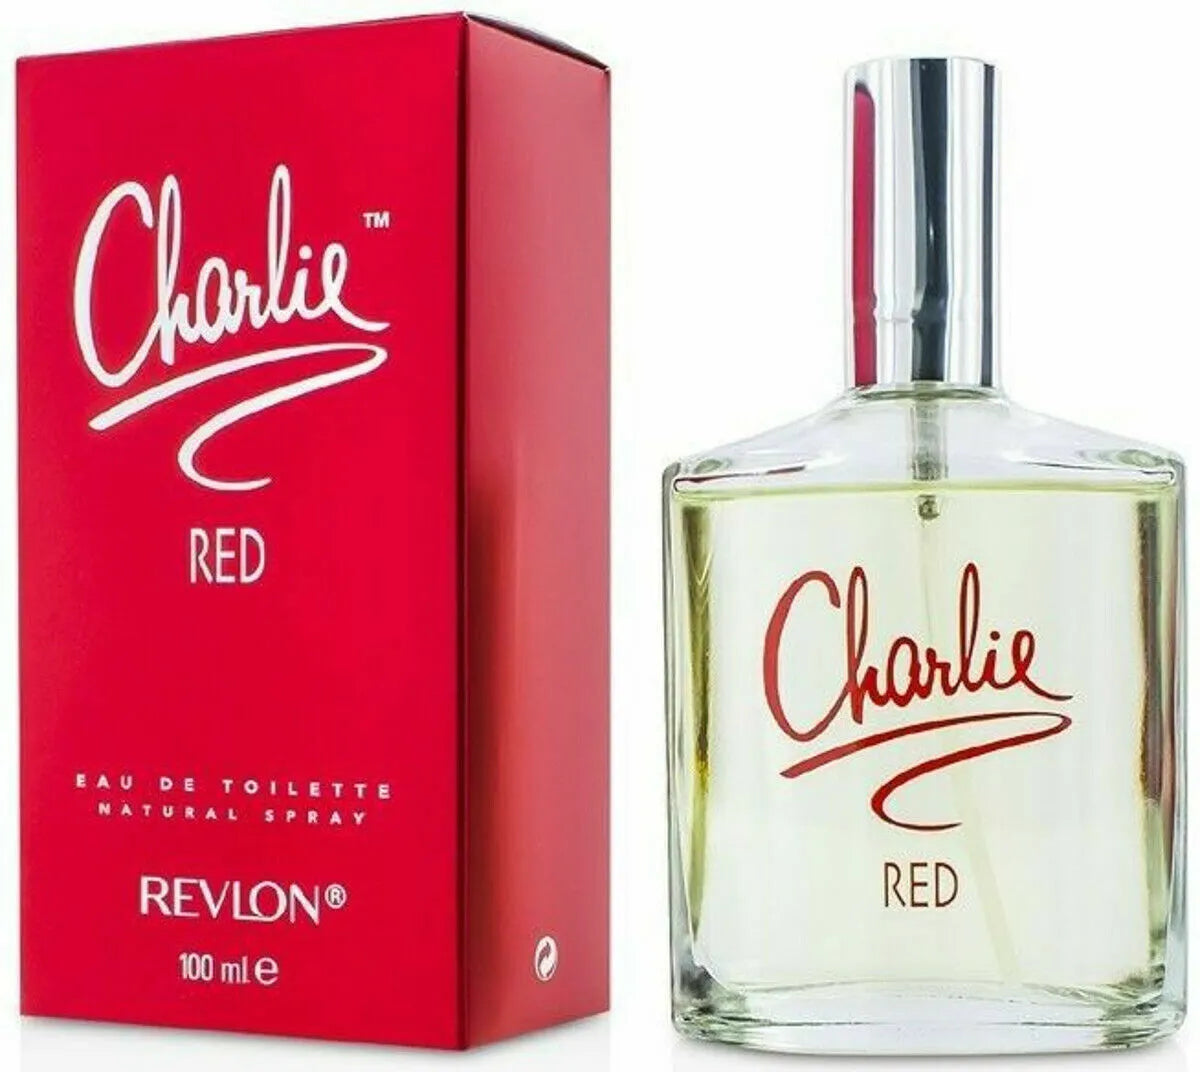 Revlon Charlie RED Eau De Toilette